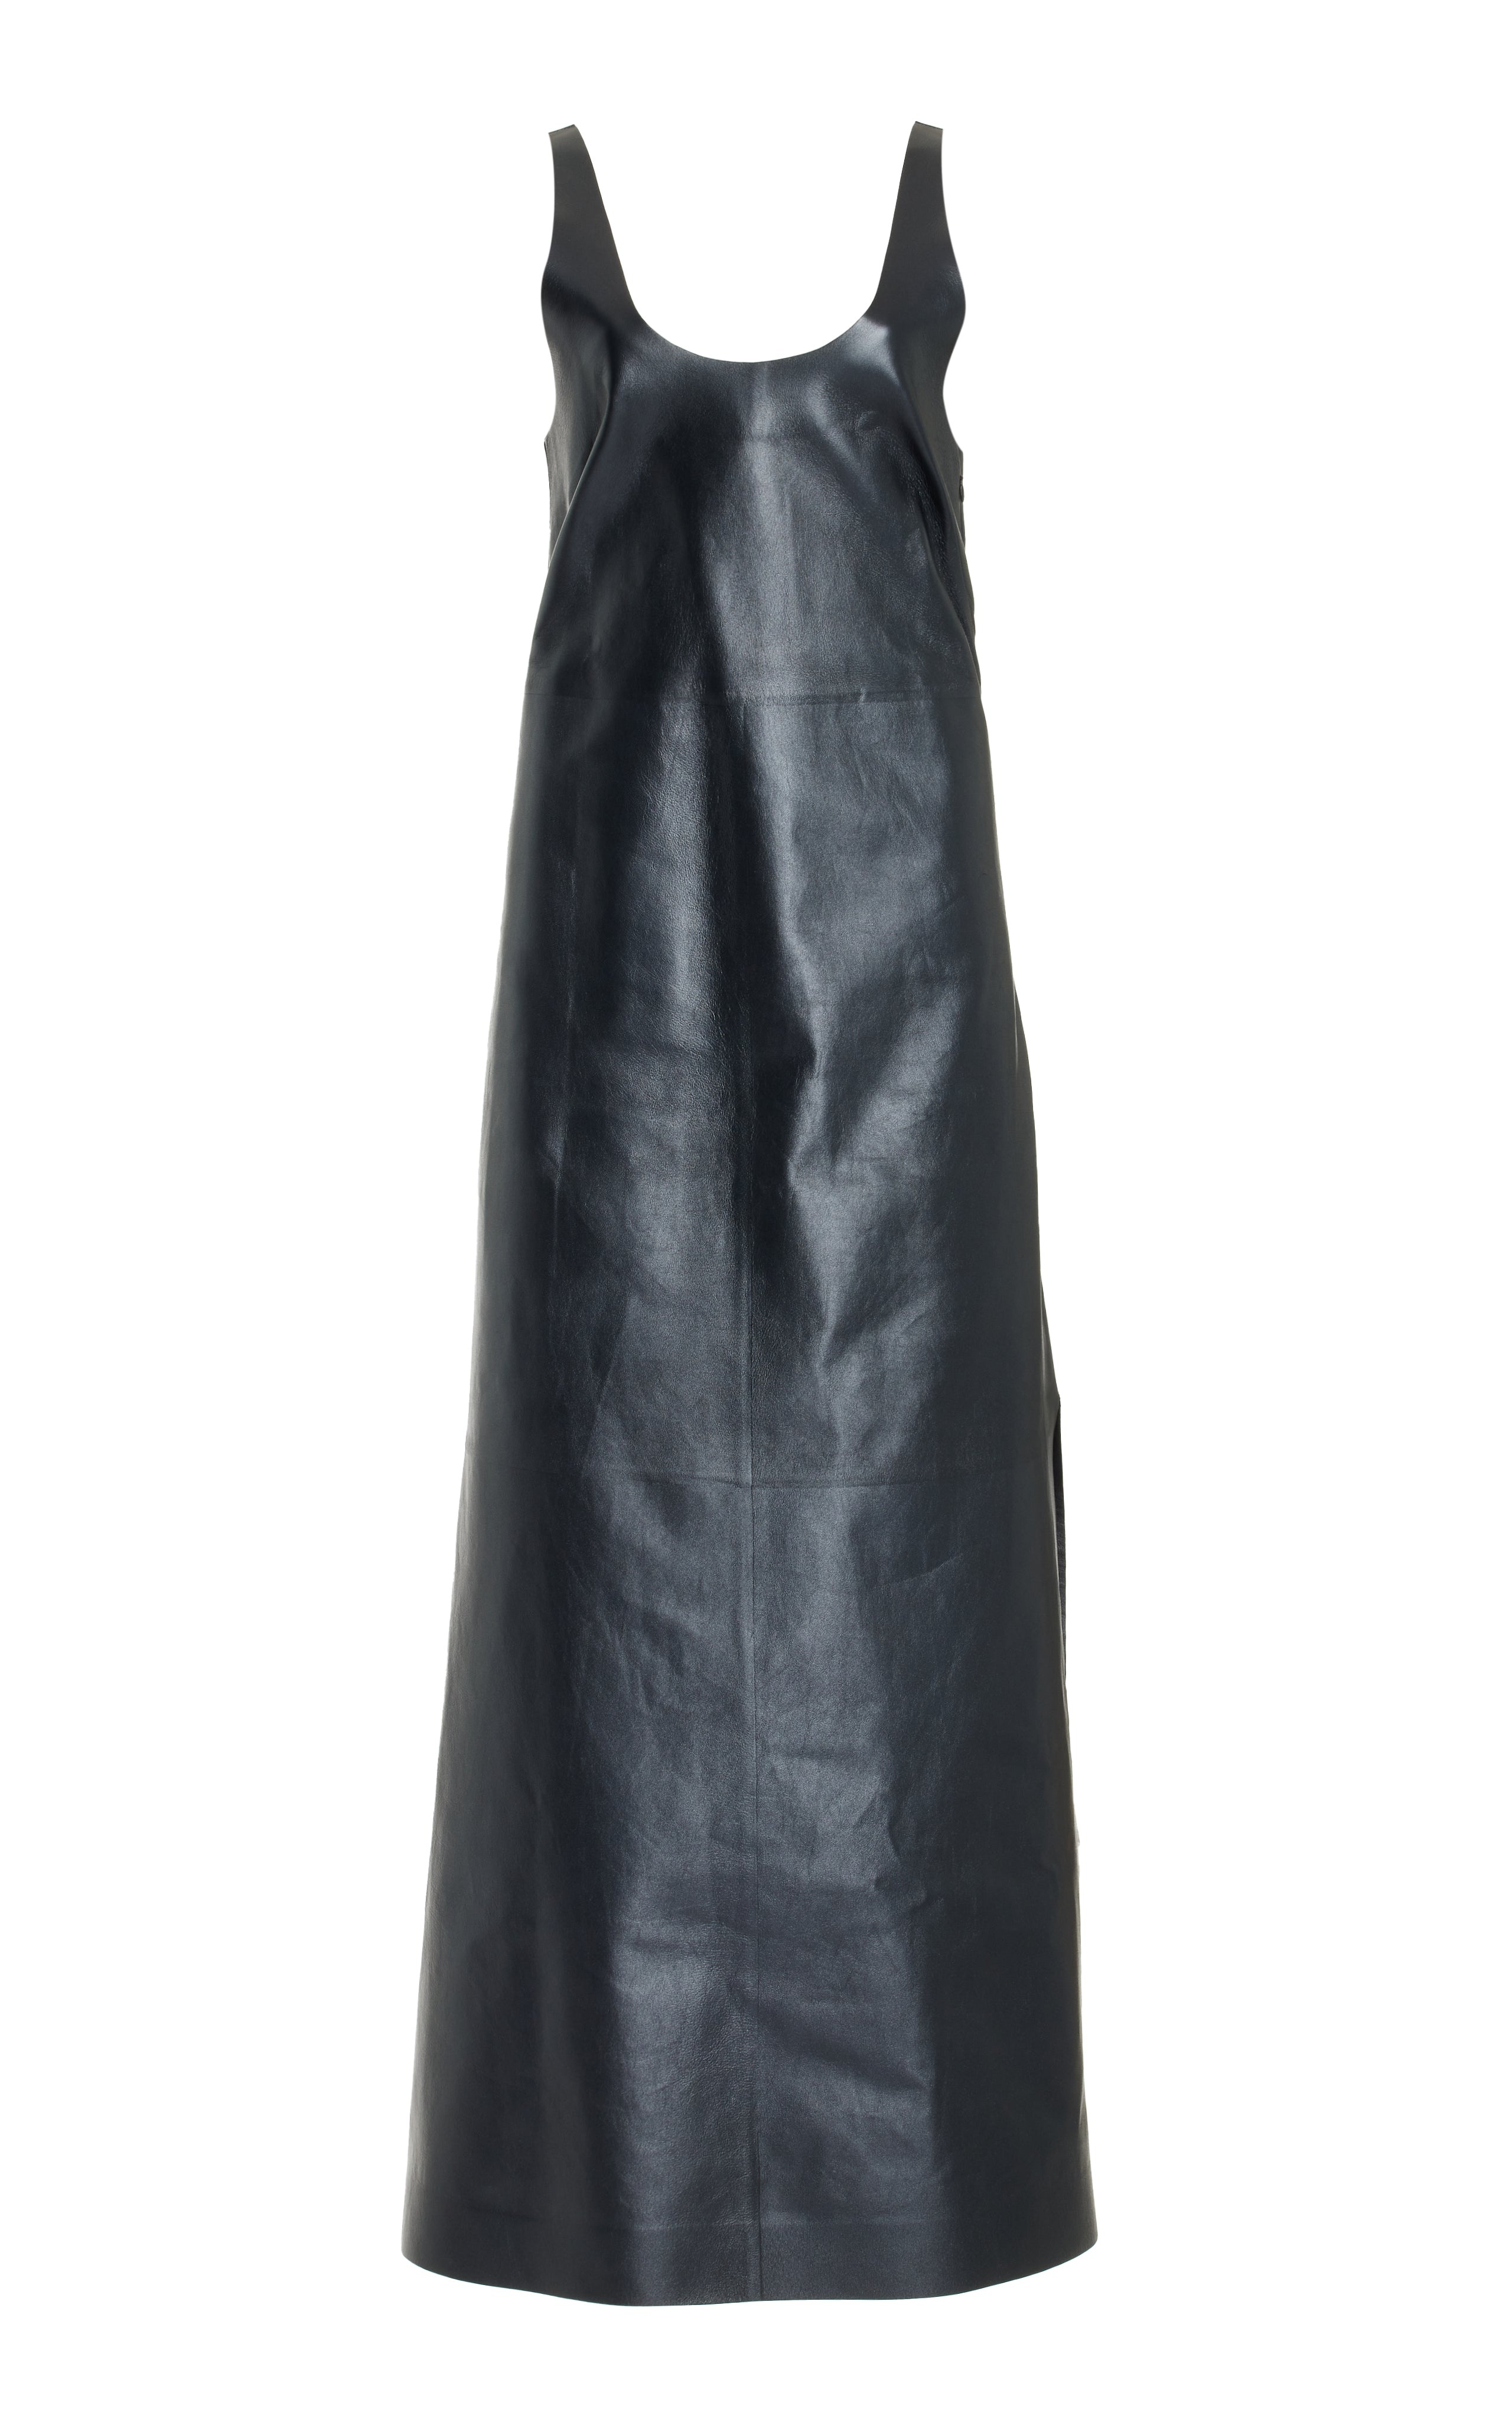 Ellson Dress in Leather - 1